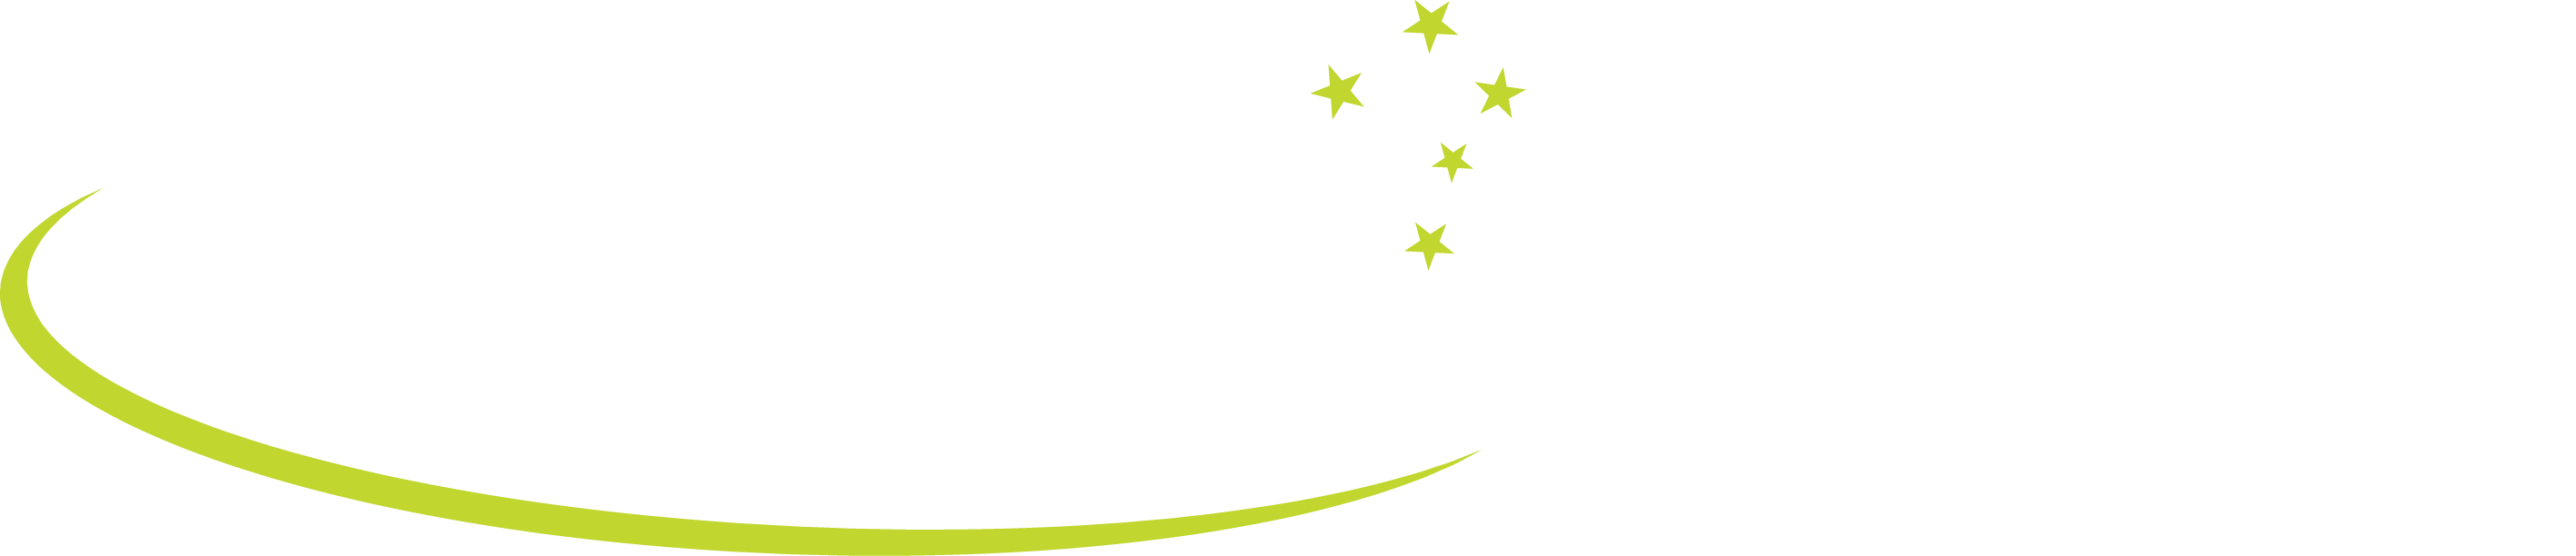 aussie traveller logo